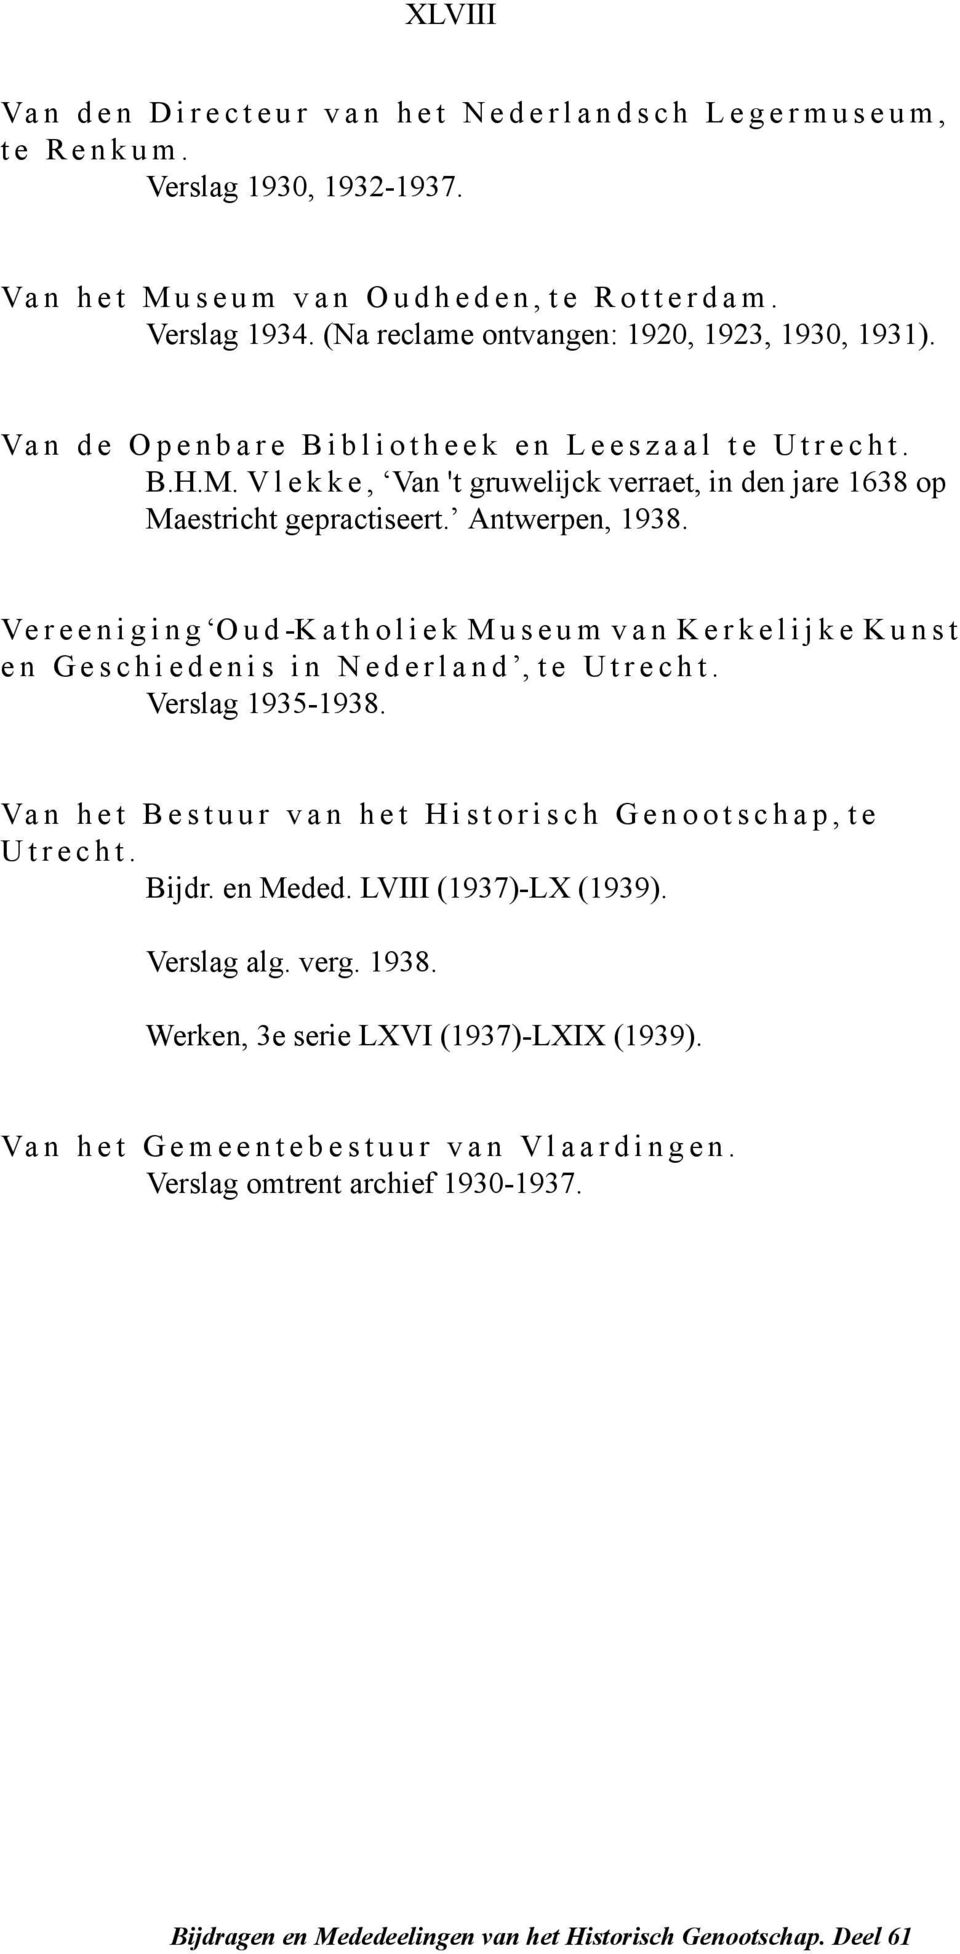 Vlekke, Van 't gruwelijck verraet, in den jare 1638 op Maestricht gepractiseert. Antwerpen, 1938.